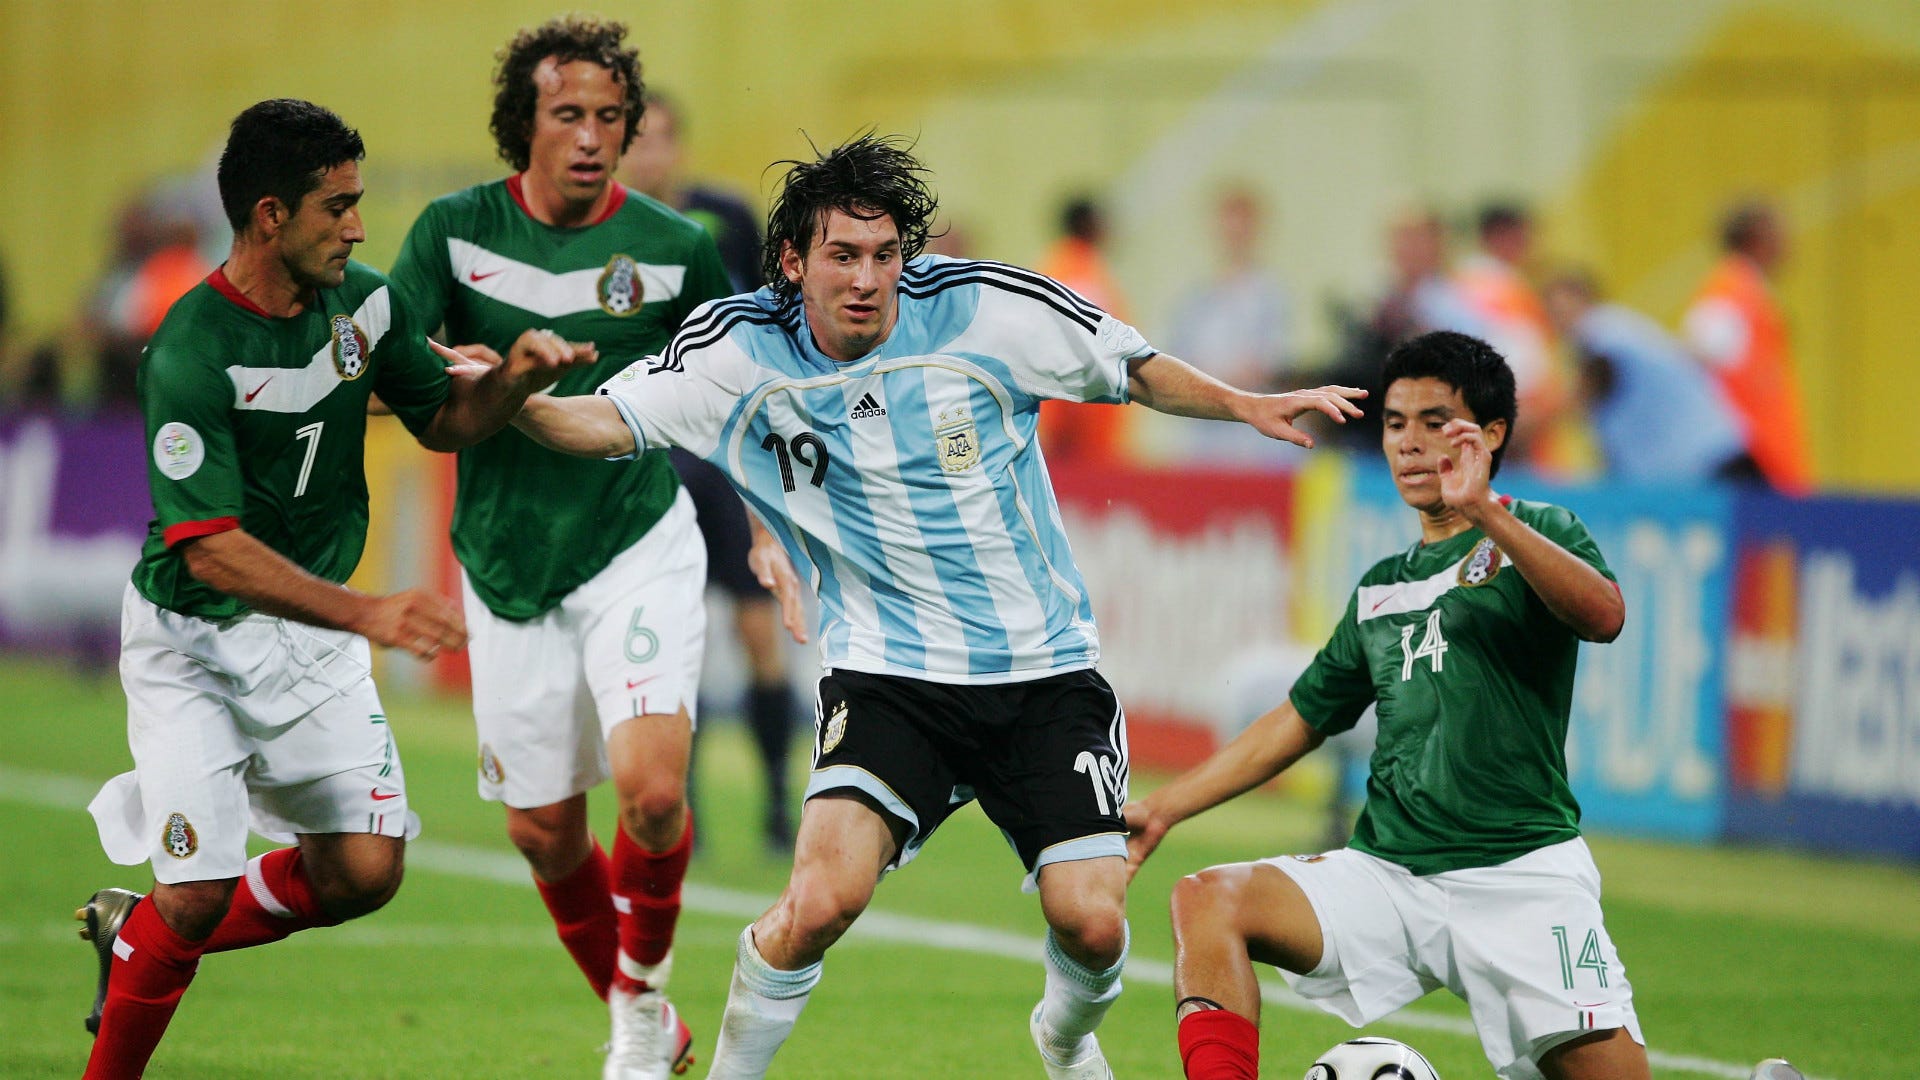 من ألمانيا 2006 إلى البرازيل 2014، تعرف على تاريخ ميسي في كأس العالم |  العربية Goal.com